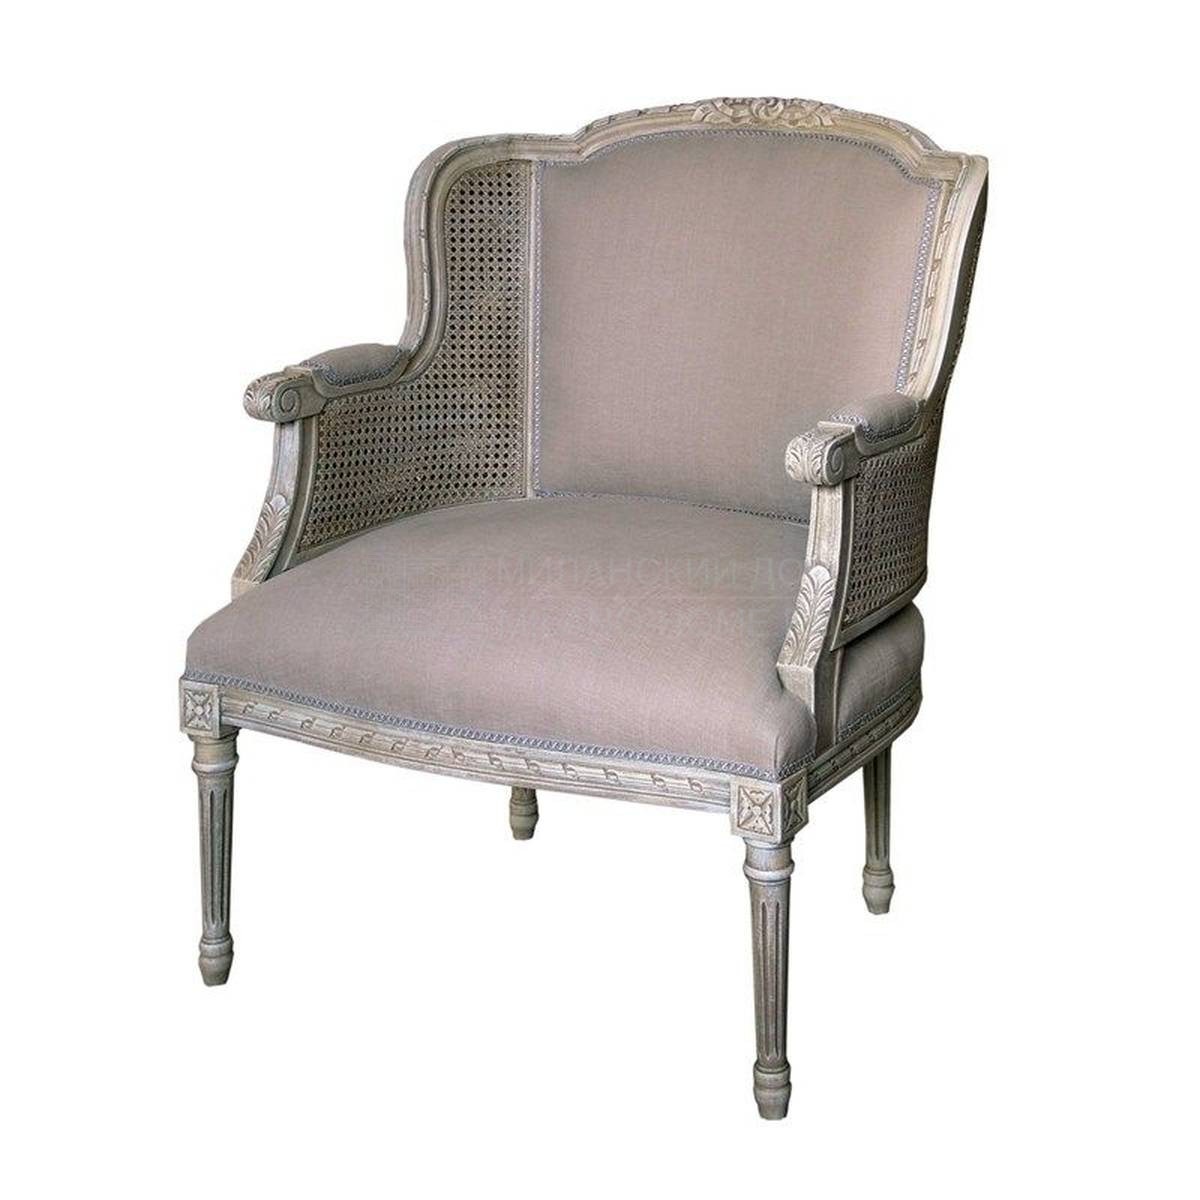 Кресло M-3372 armchair из Испании фабрики GUADARTE